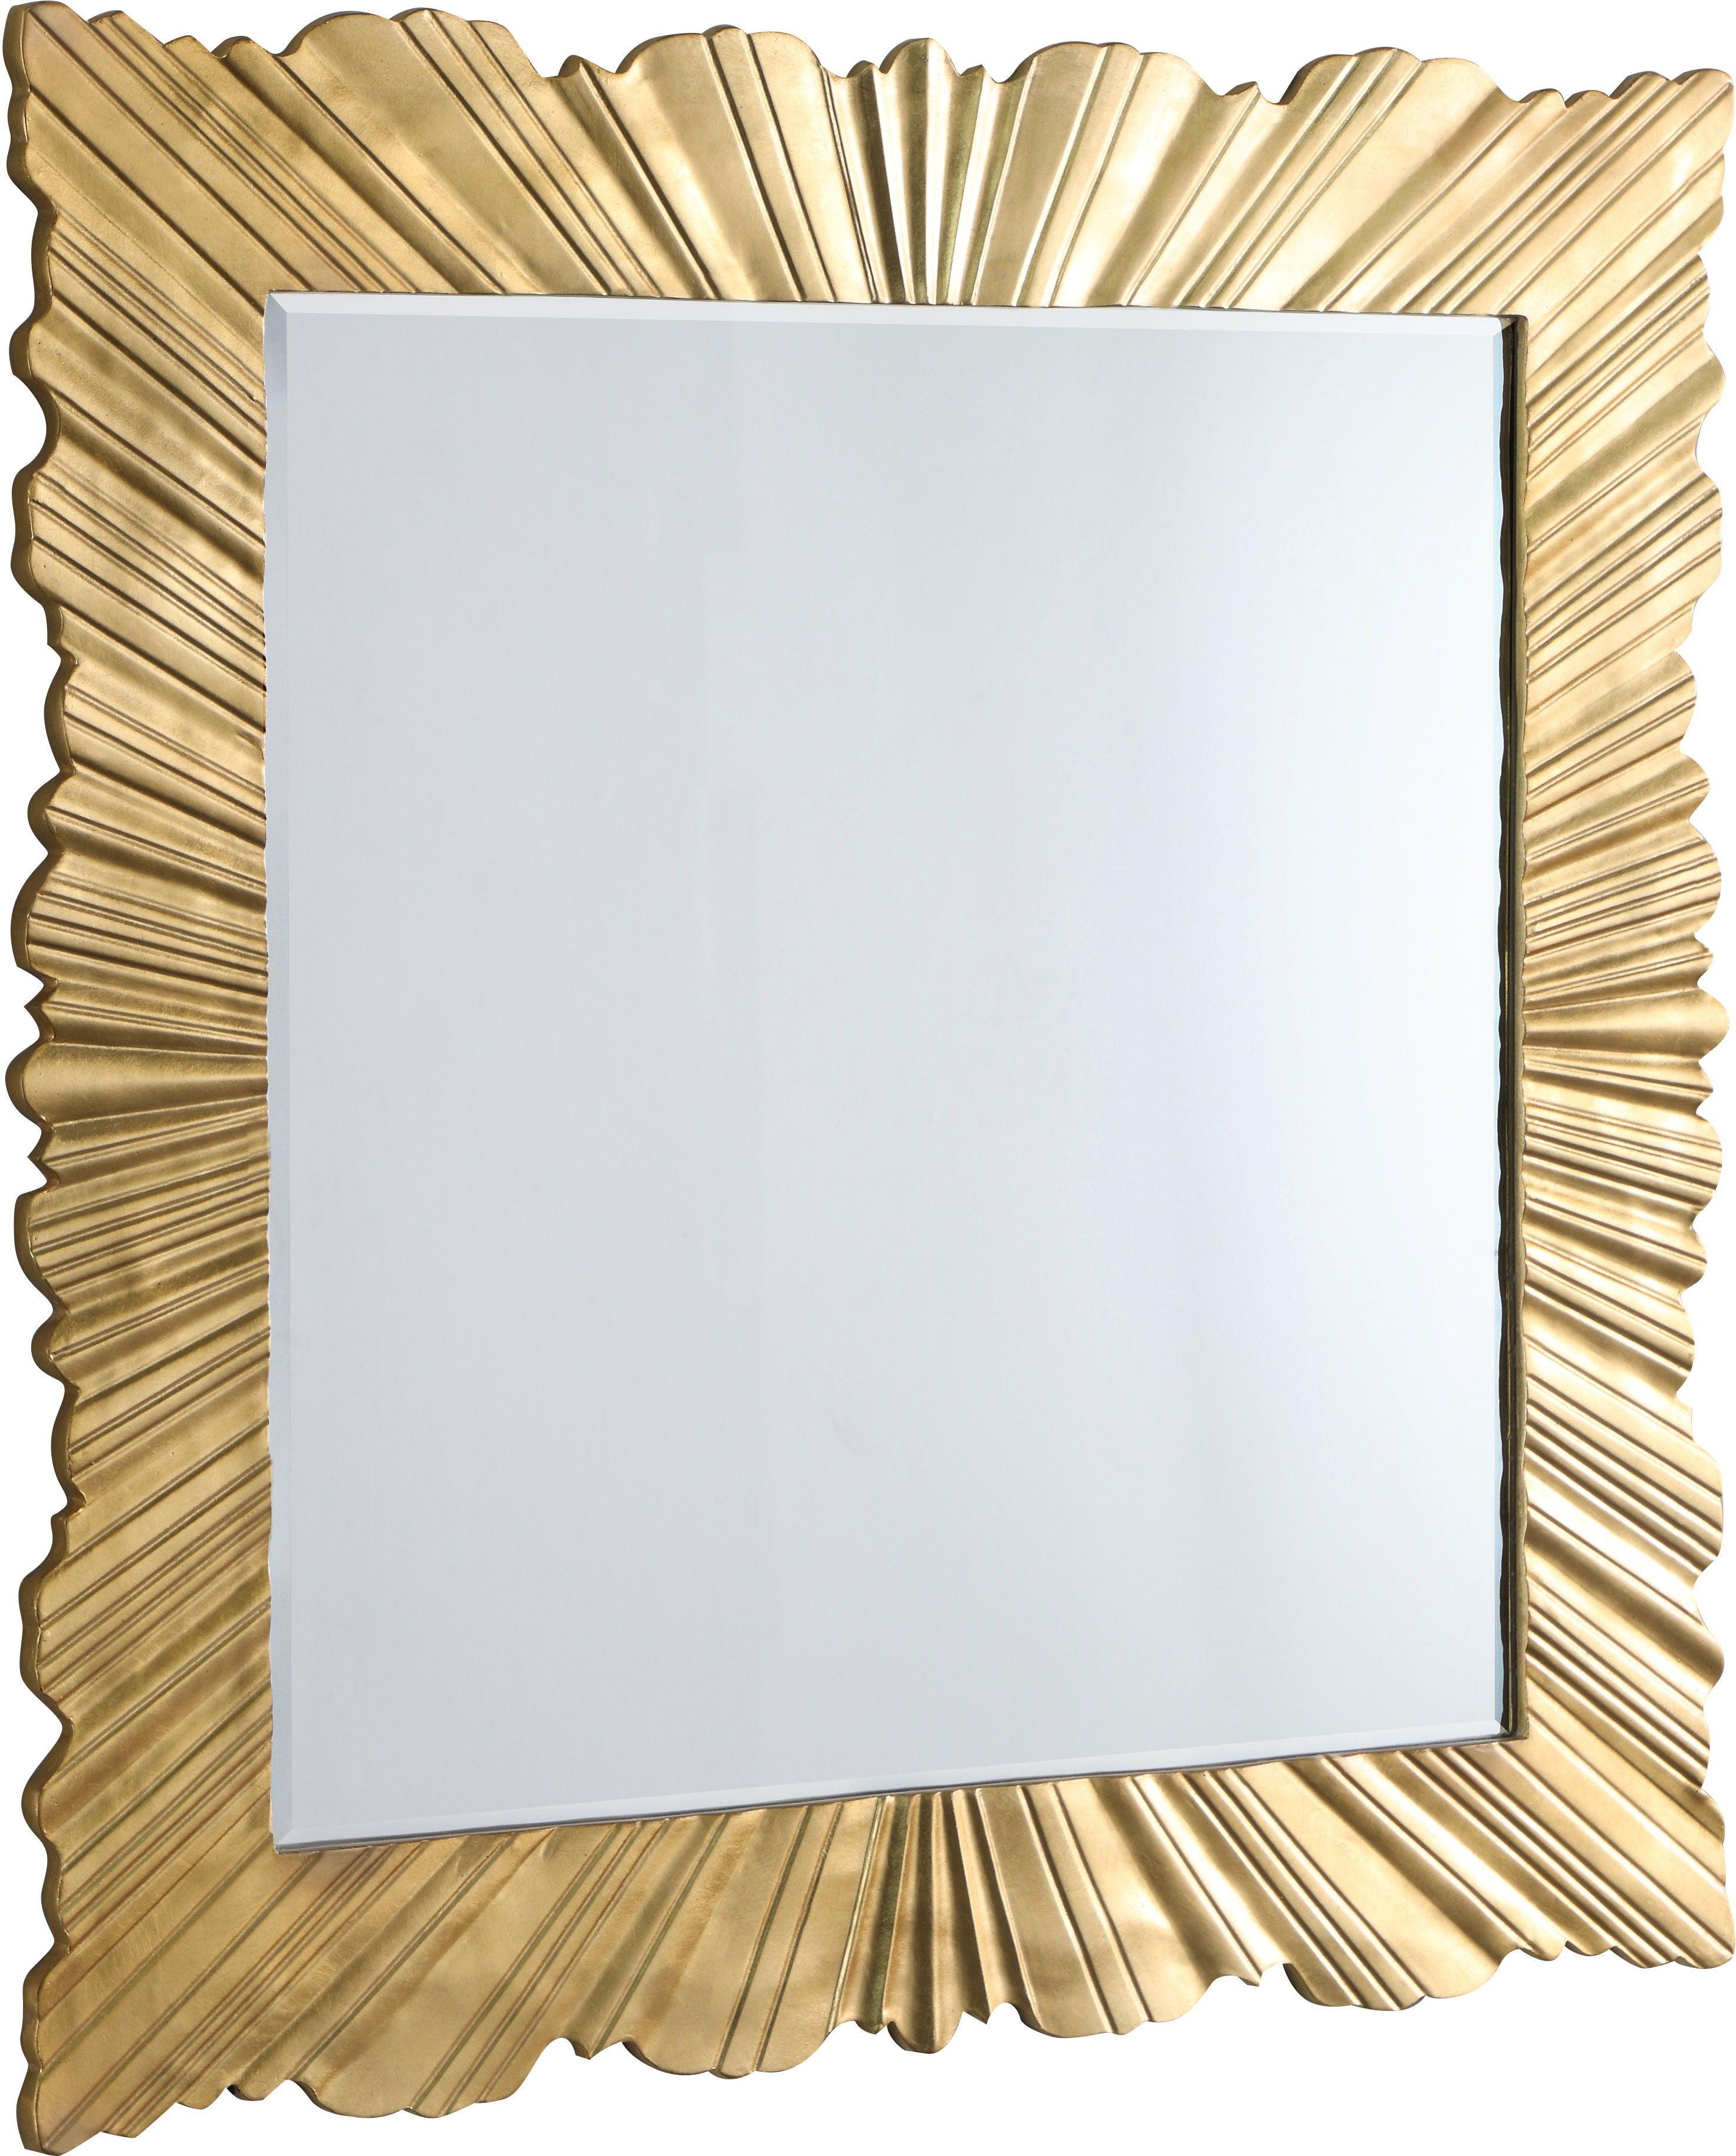 Meridian Furniture - Golda - Leaf Mirror - Gold - 5th Avenue Furniture